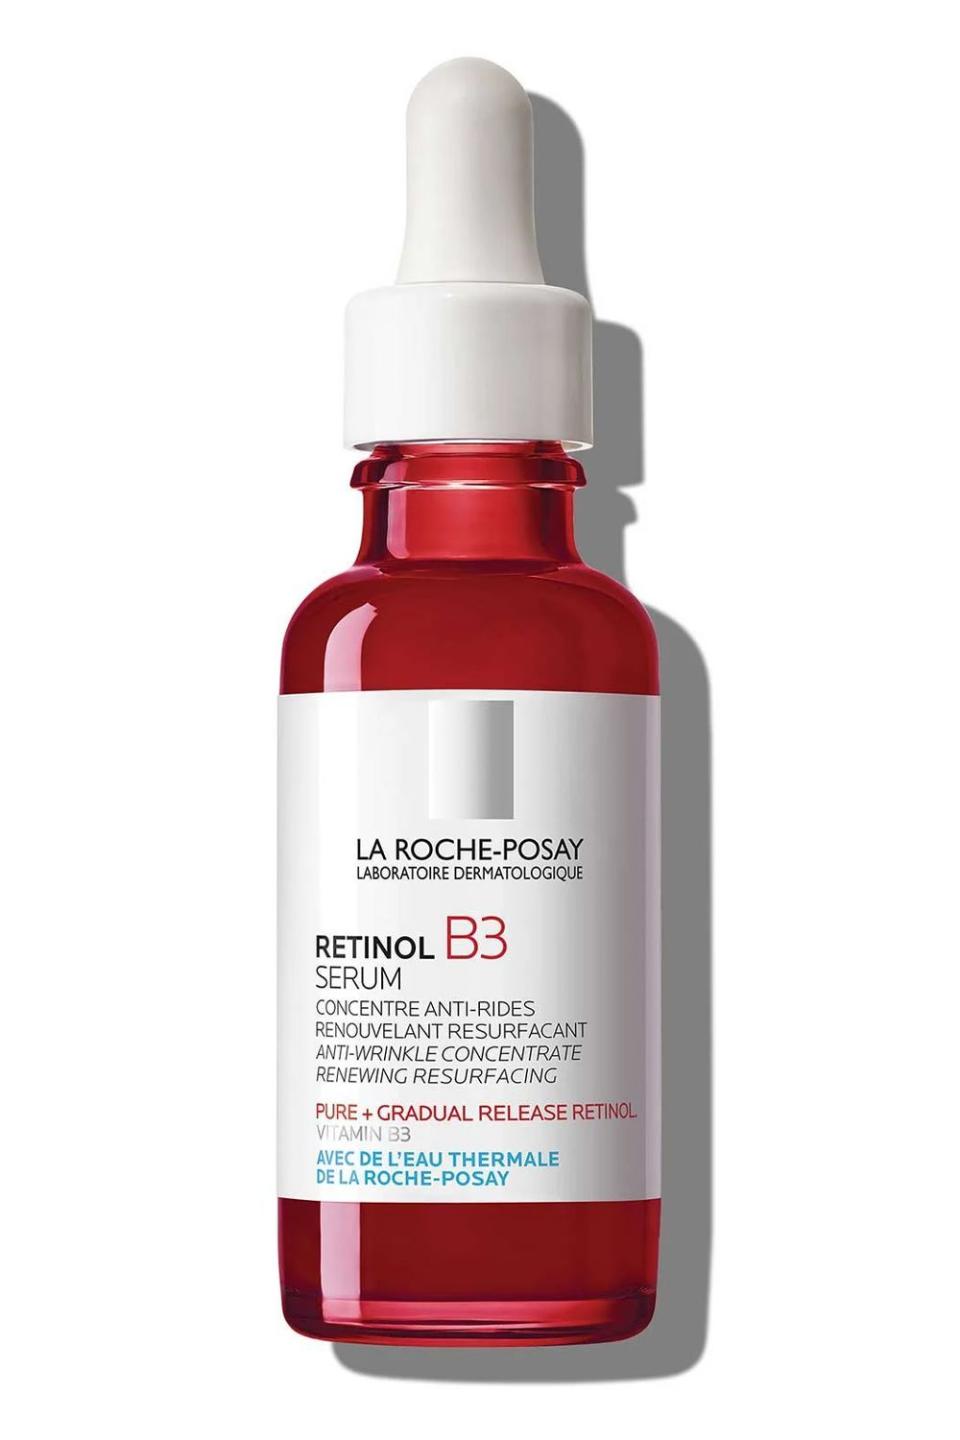 7) La Roche-Posay Retinol Face Serum with Vitamin B3